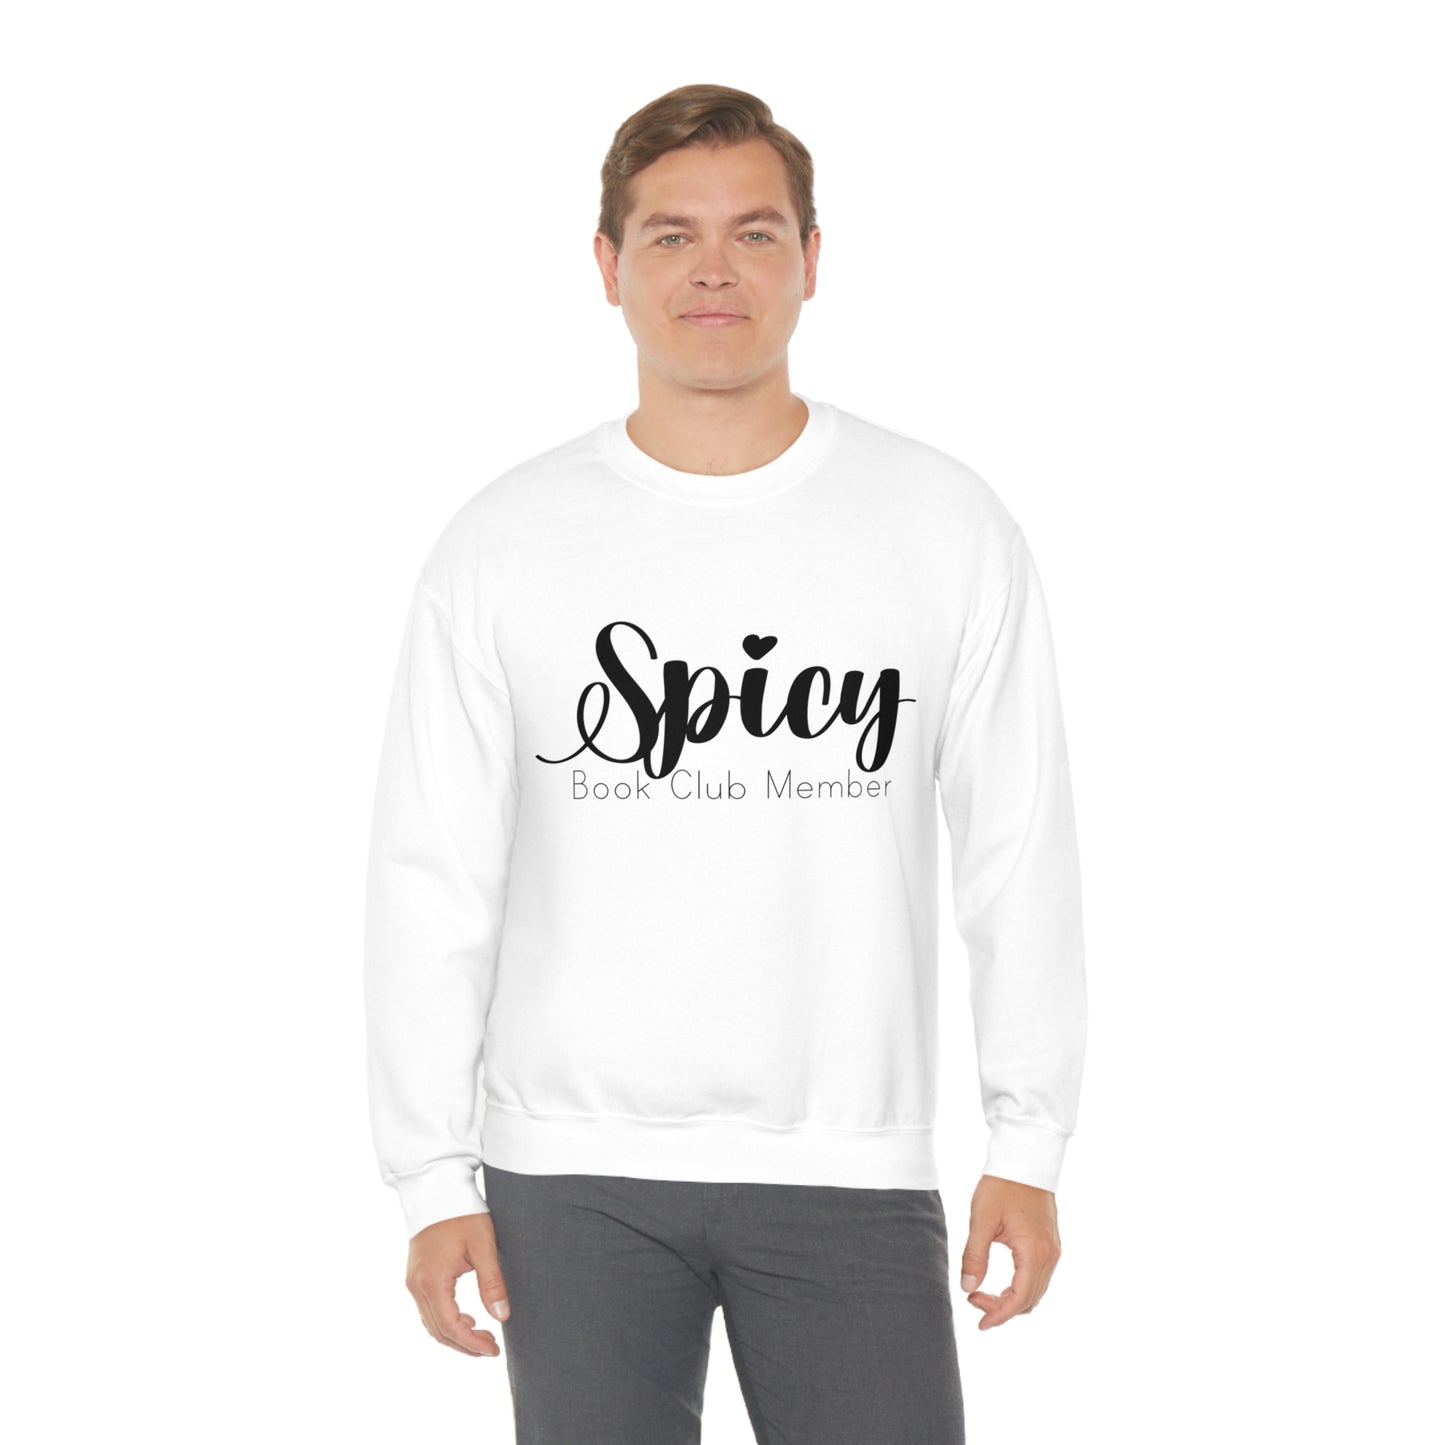 Spicy Book Club Member Crewneck Sweatshirt